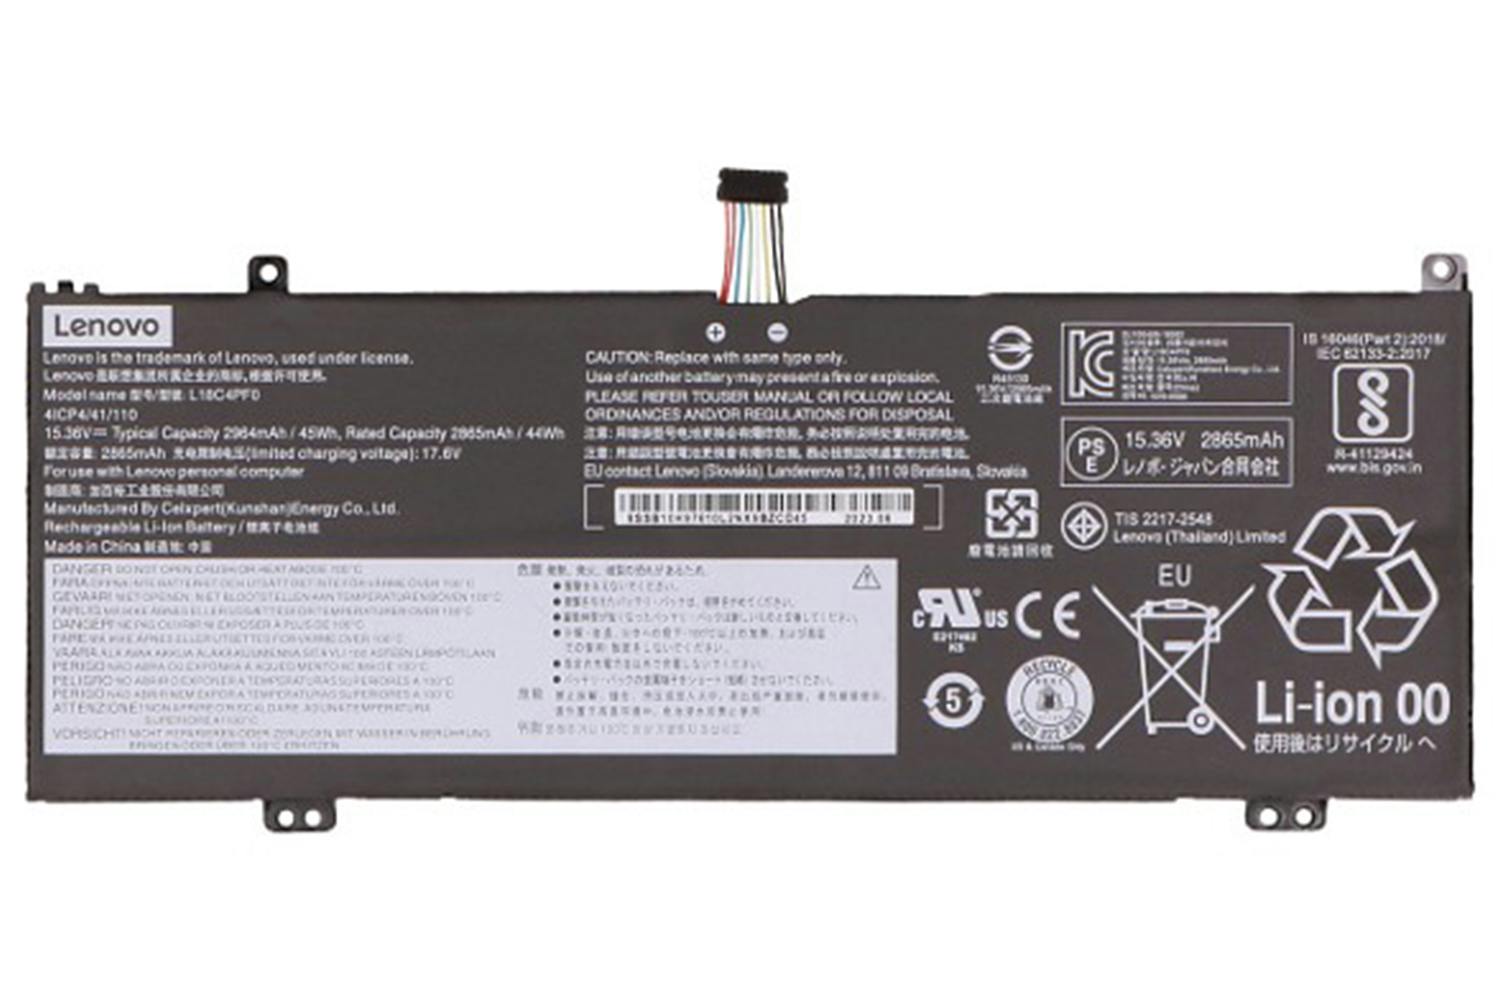 Lenovo Main Battery Pack 15.36V 2865mAh